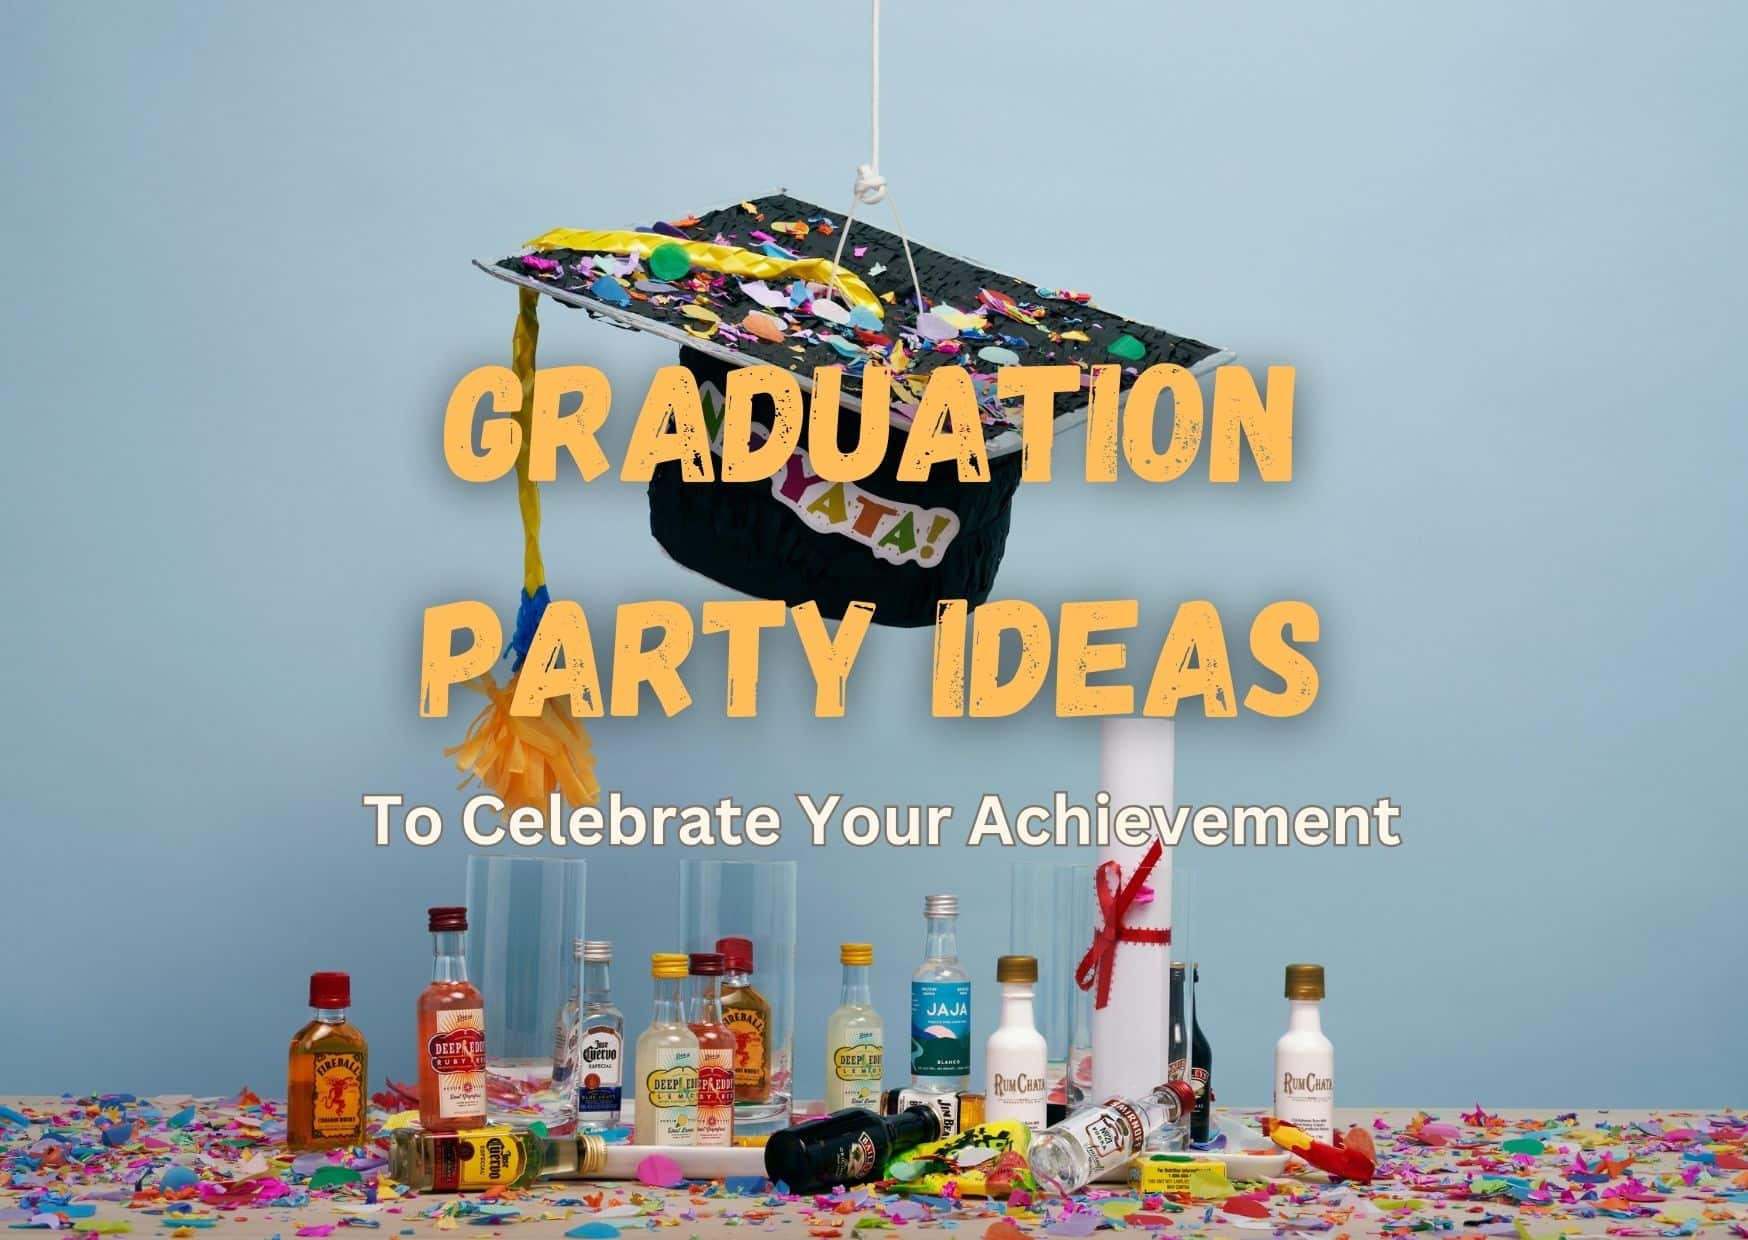 Graduation Party Ideas To Celebrate Your Achievement